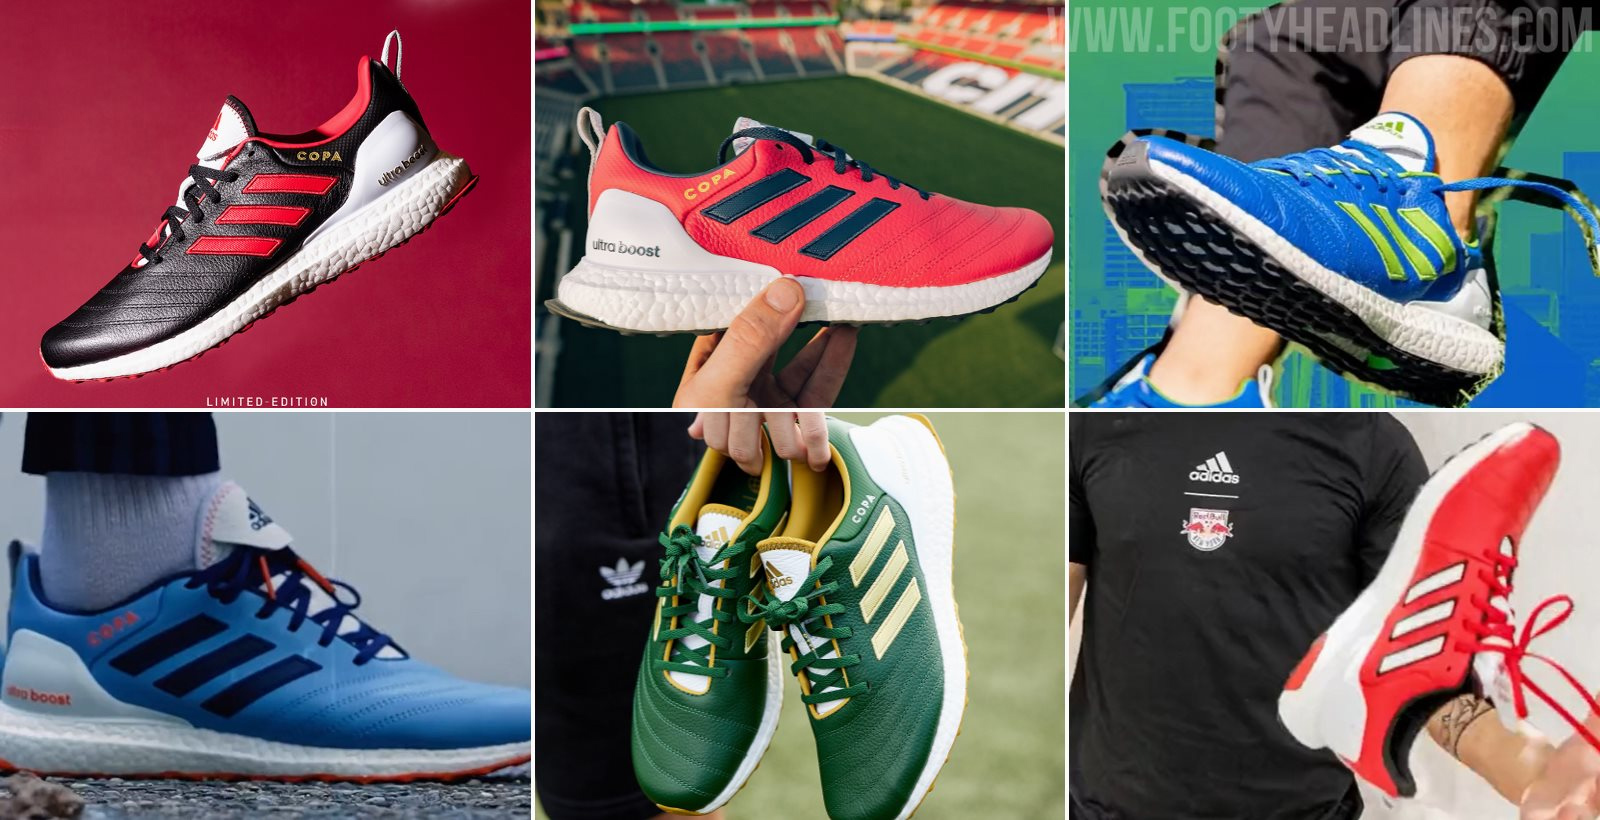 Adidas tung ra bản SNEAKER collab giữa Ultraboots và Copa cho 7 đội bóng ở giải MLS